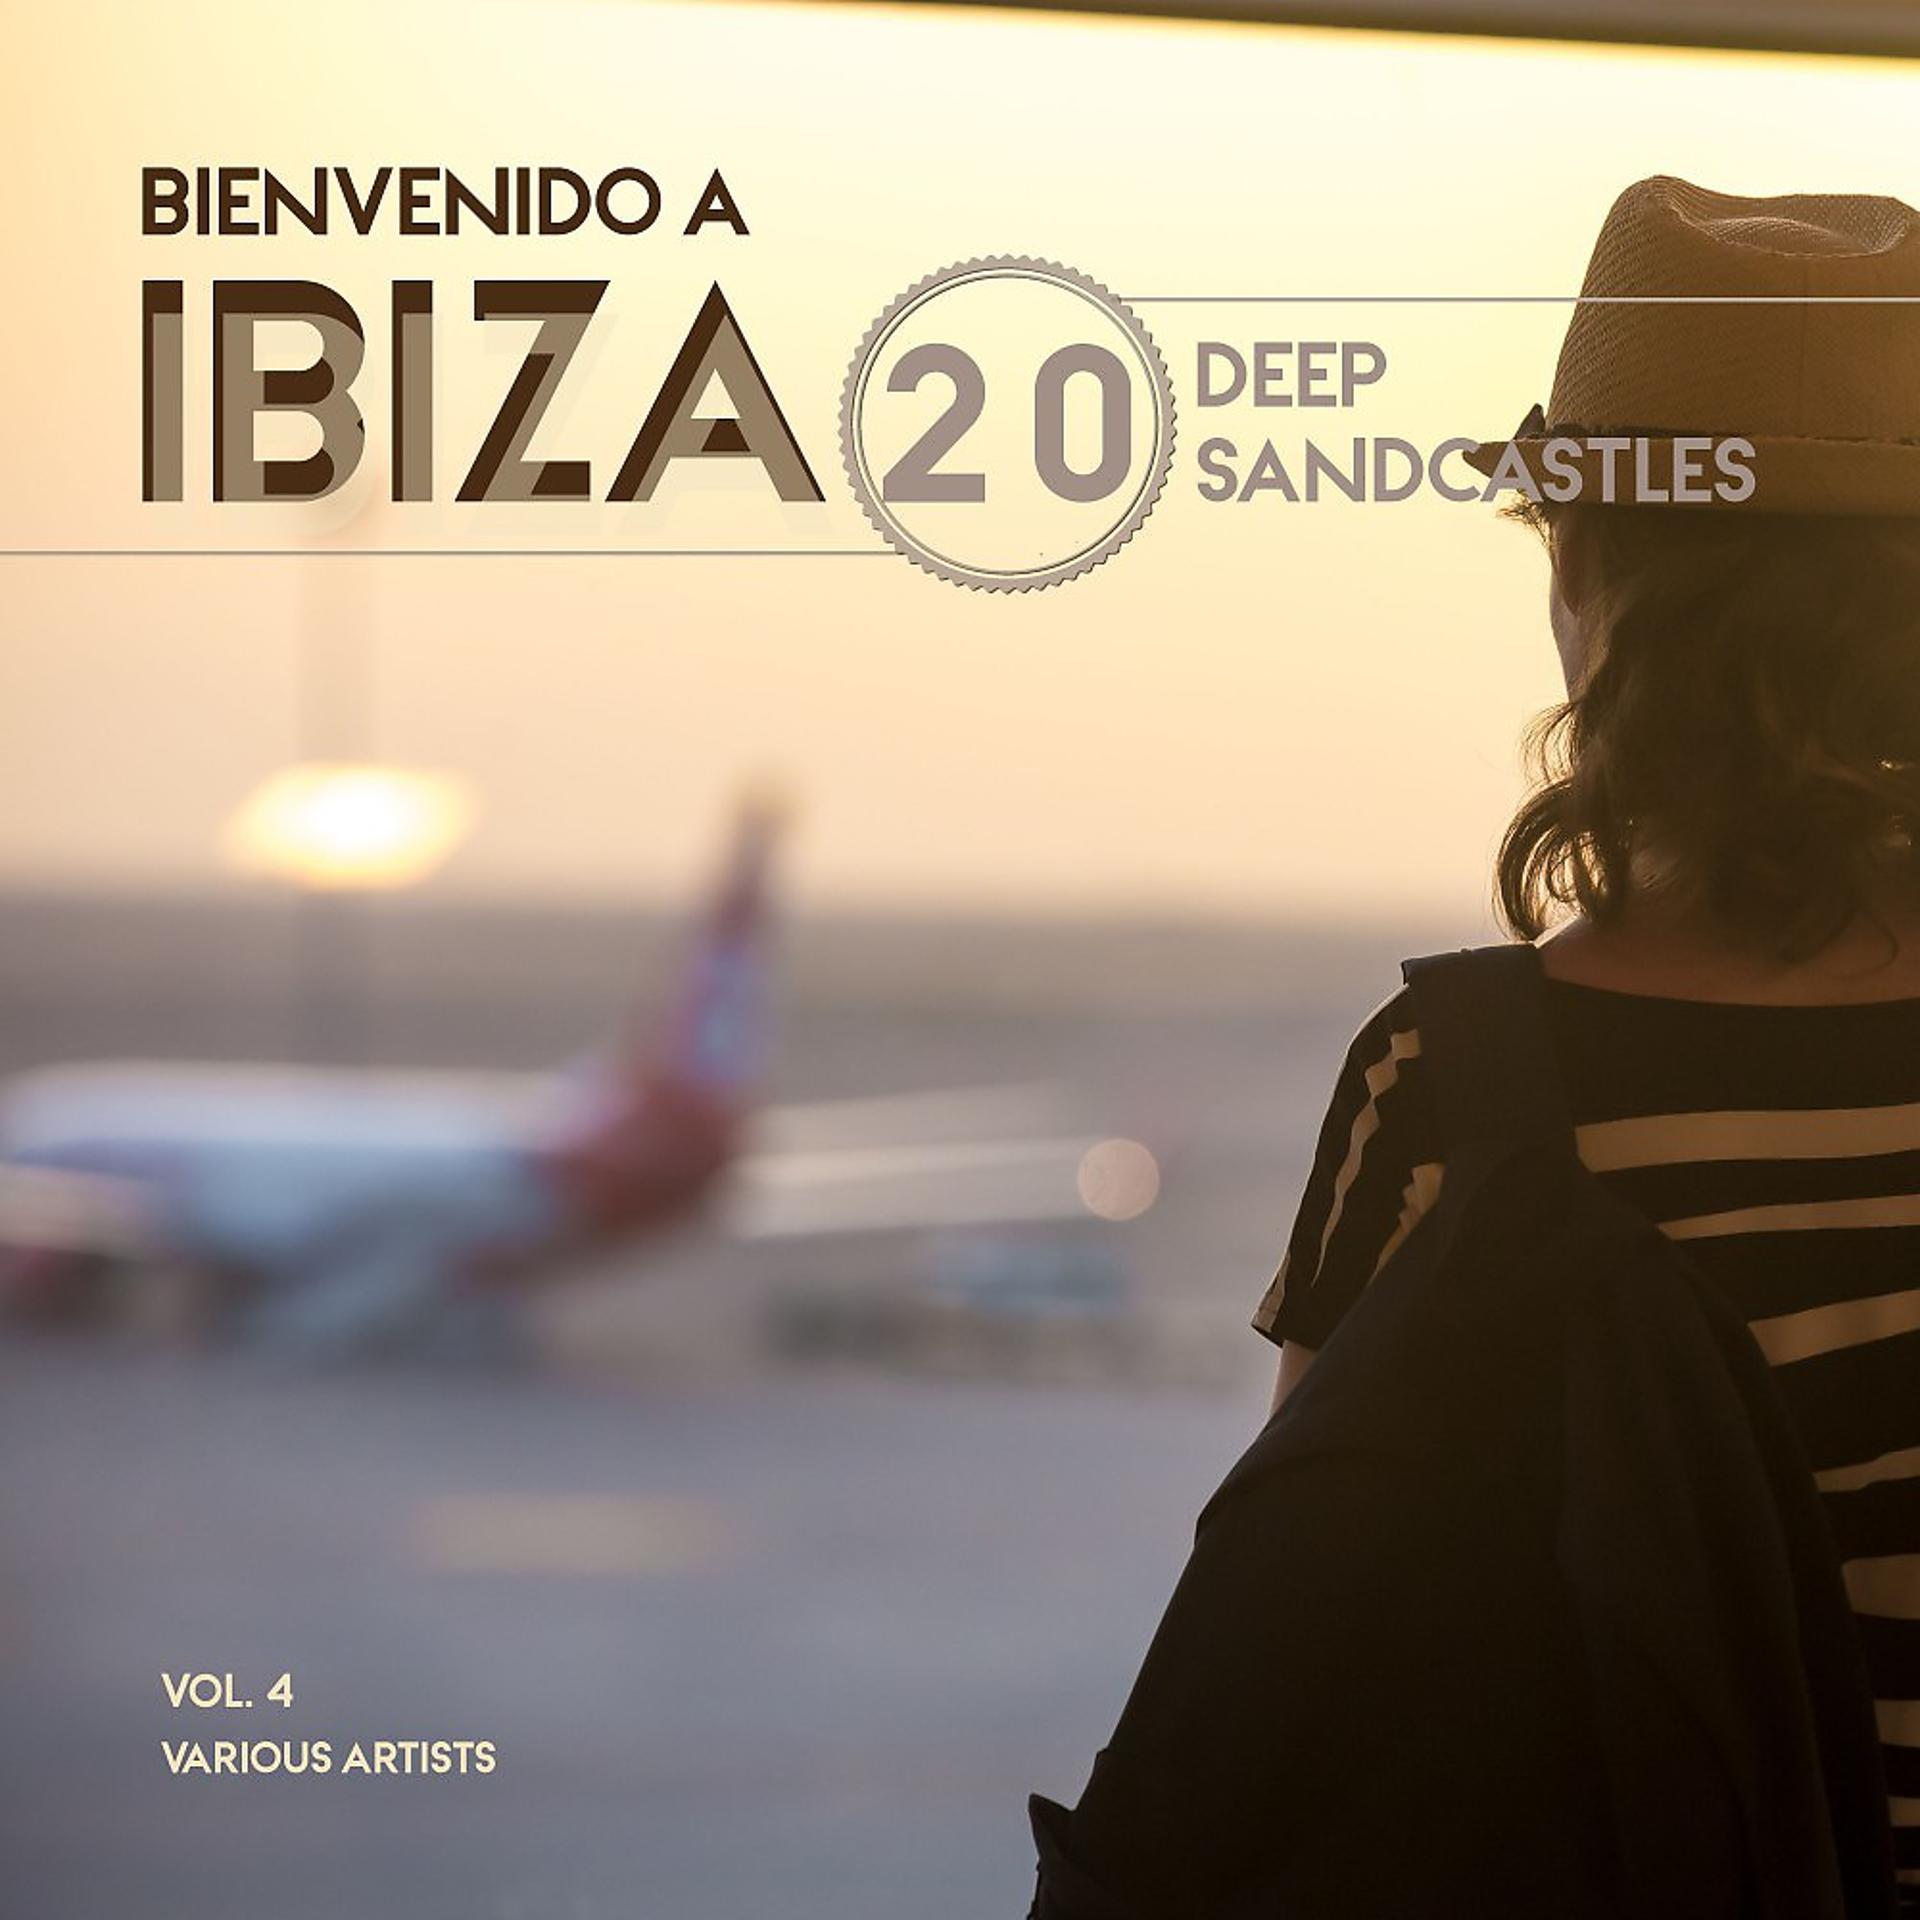 Постер альбома Bienvenido a Ibiza (20 Deep Sandcastles), Vol. 4